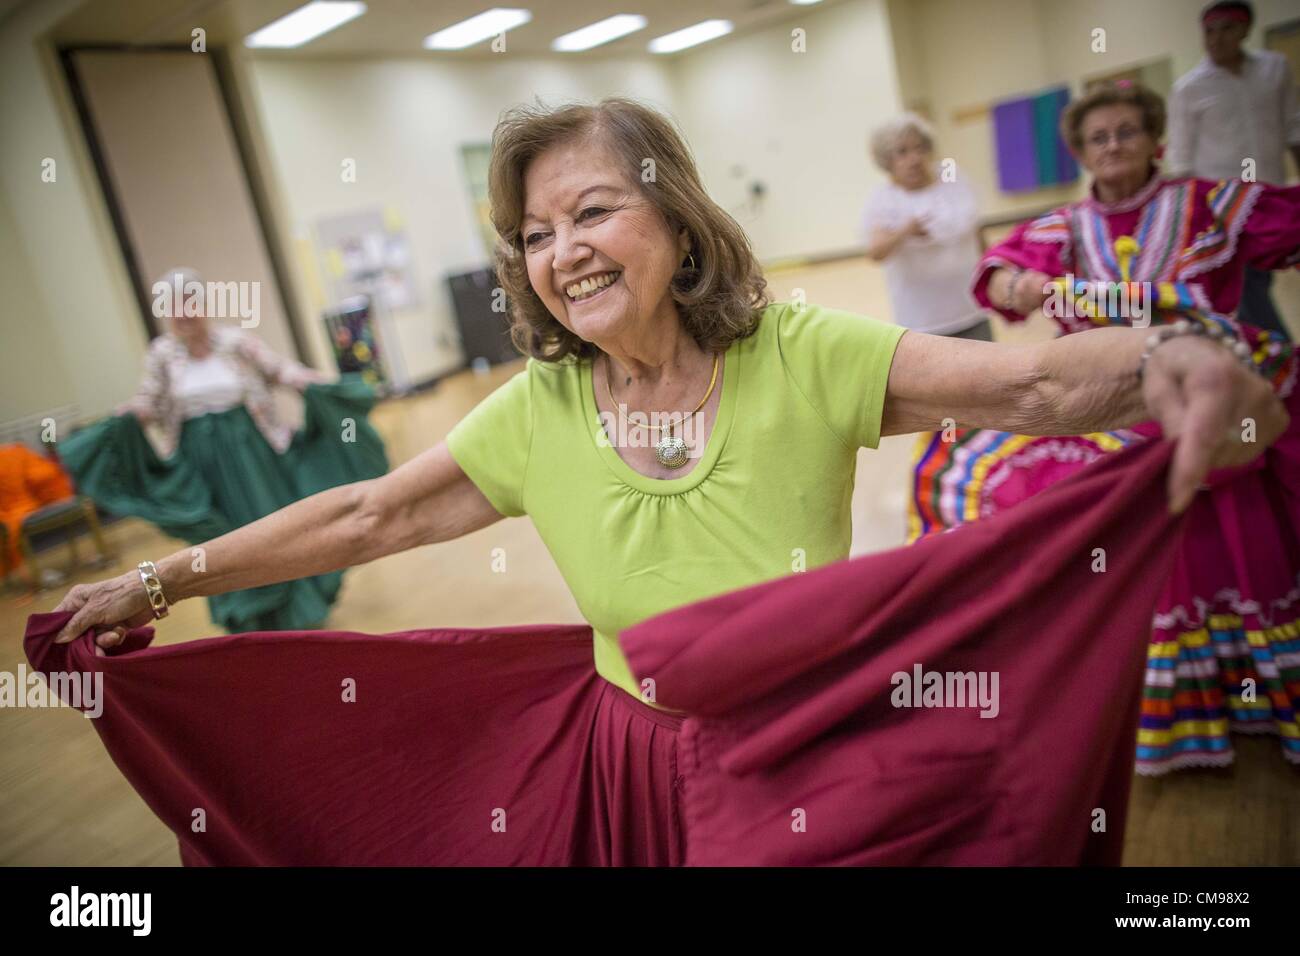 27. Juni 2012 - Glendale, Arizona, USA - CARMEN CORDOVA, 82 Jahre alt, Tänze während der Proben für die Senior-Fiesta-Tänzer Mittelpunkt Erwachsenen Glendale in Arizona, einem Vorort von Phoenix. Tanzen wie ein Teil des Trainingsprogramm nicht ungewöhnlich ist, aber die Senior Fiesta Tänzer mexikanischen Stil Folklorico Tänze für ihr Workout verwenden. Die Senior-Fiesta-Tänzer haben zusammen seit 15 Jahren durchgeführt. Sie erhalten jede Woche für Proben zusammen und führen in Pflegeheimen und Ruhestand Zentren in der Gegend von Phoenix, einmal im Monat oder so. Ihre energetische mexikanischen Folklorico Tänze halten sie geschmeidig und Stockfoto